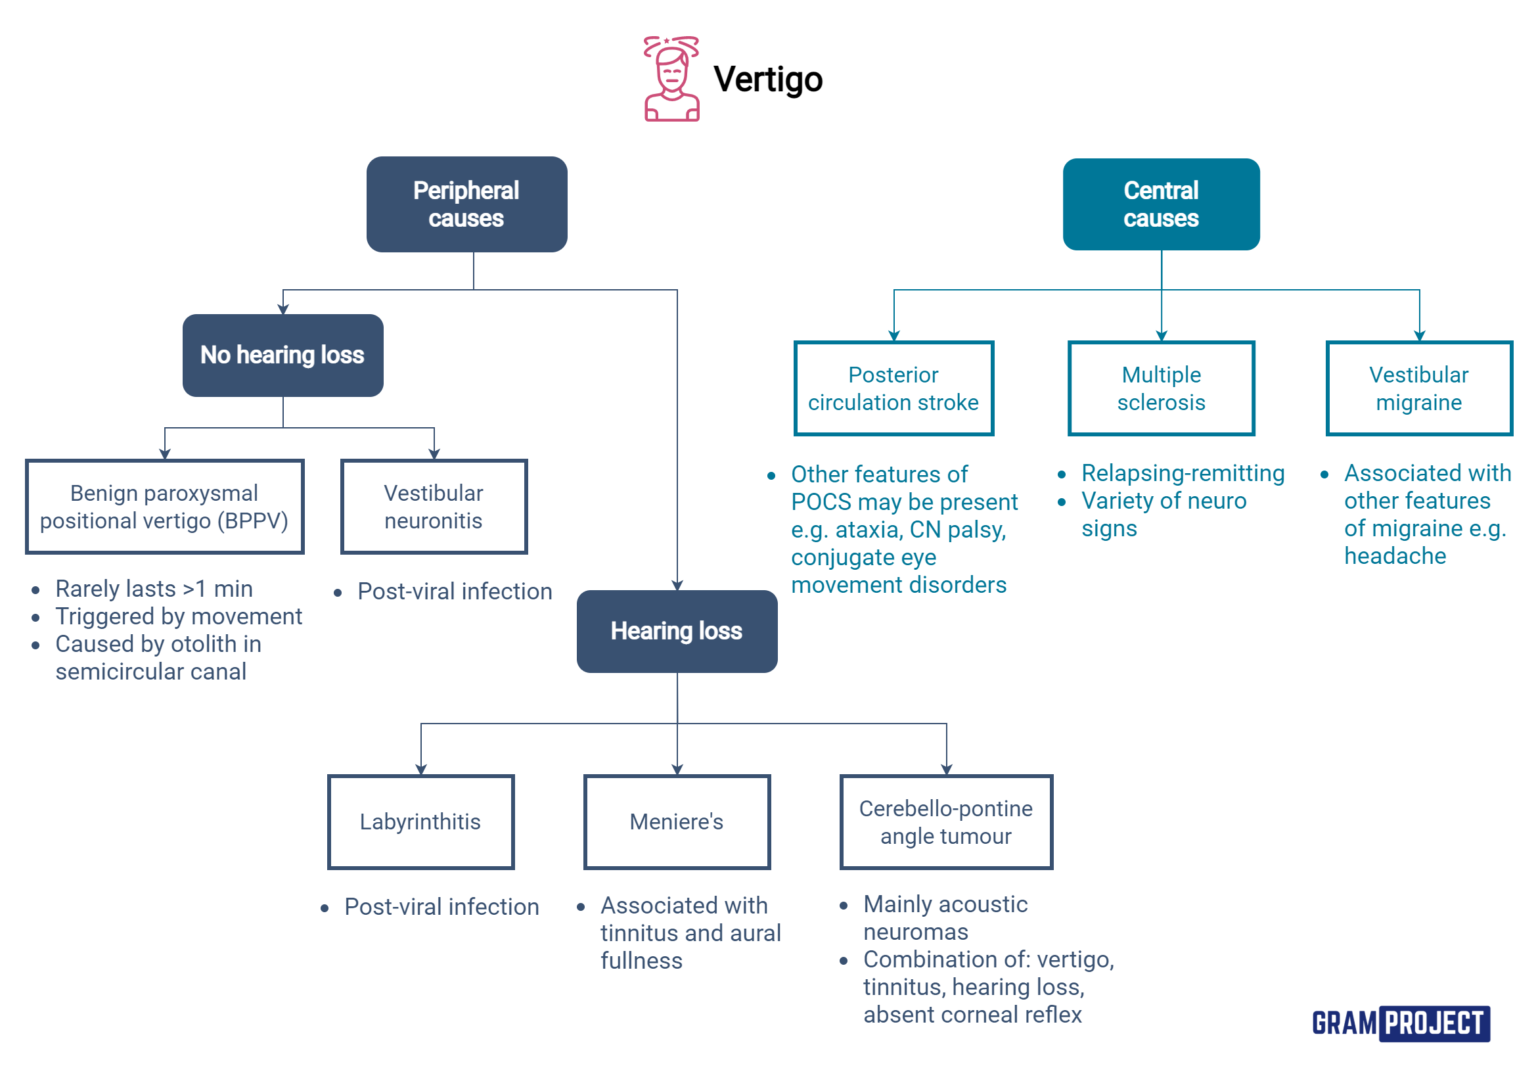 Diagnostic algorithm to approaching a patient presenting with vertigo